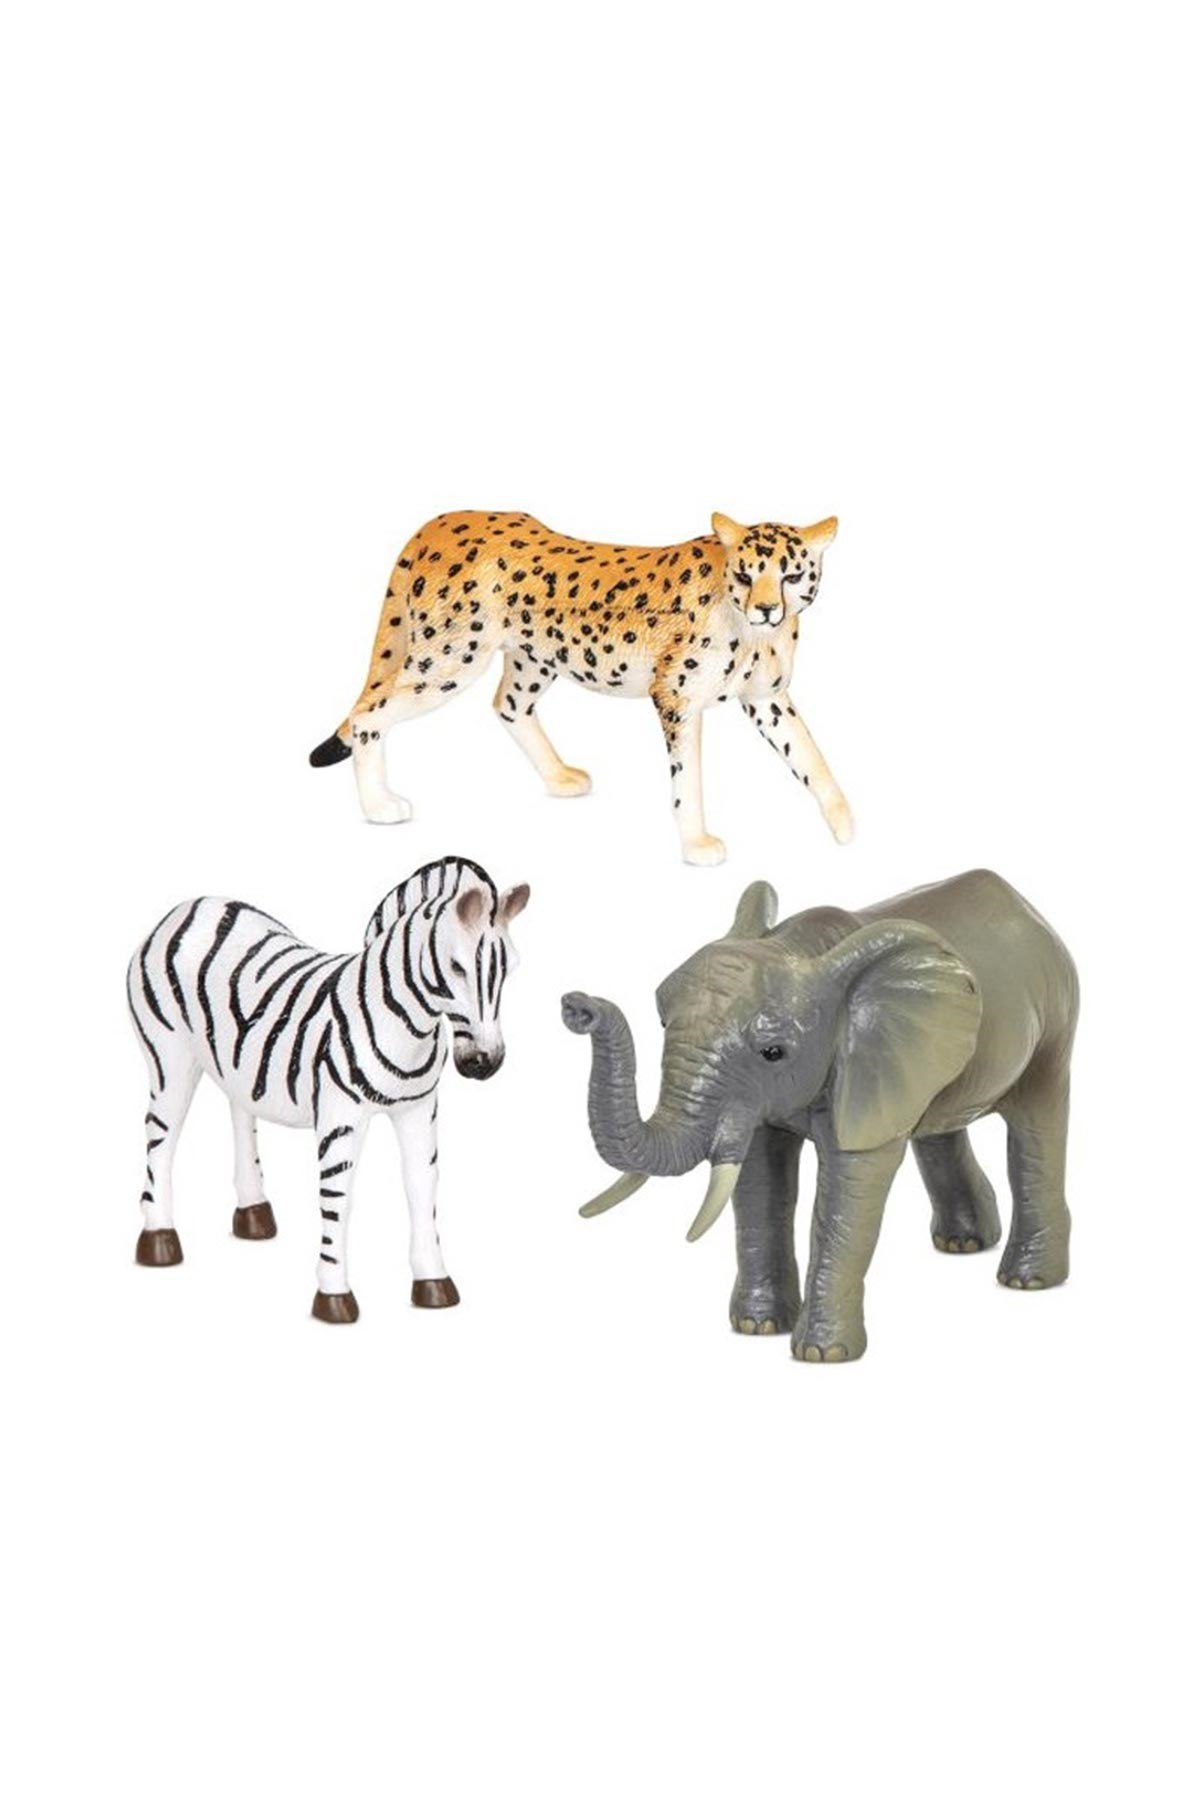 Terra Orman Hayvanları 3'lü Set Zebra, Fil ve Çita